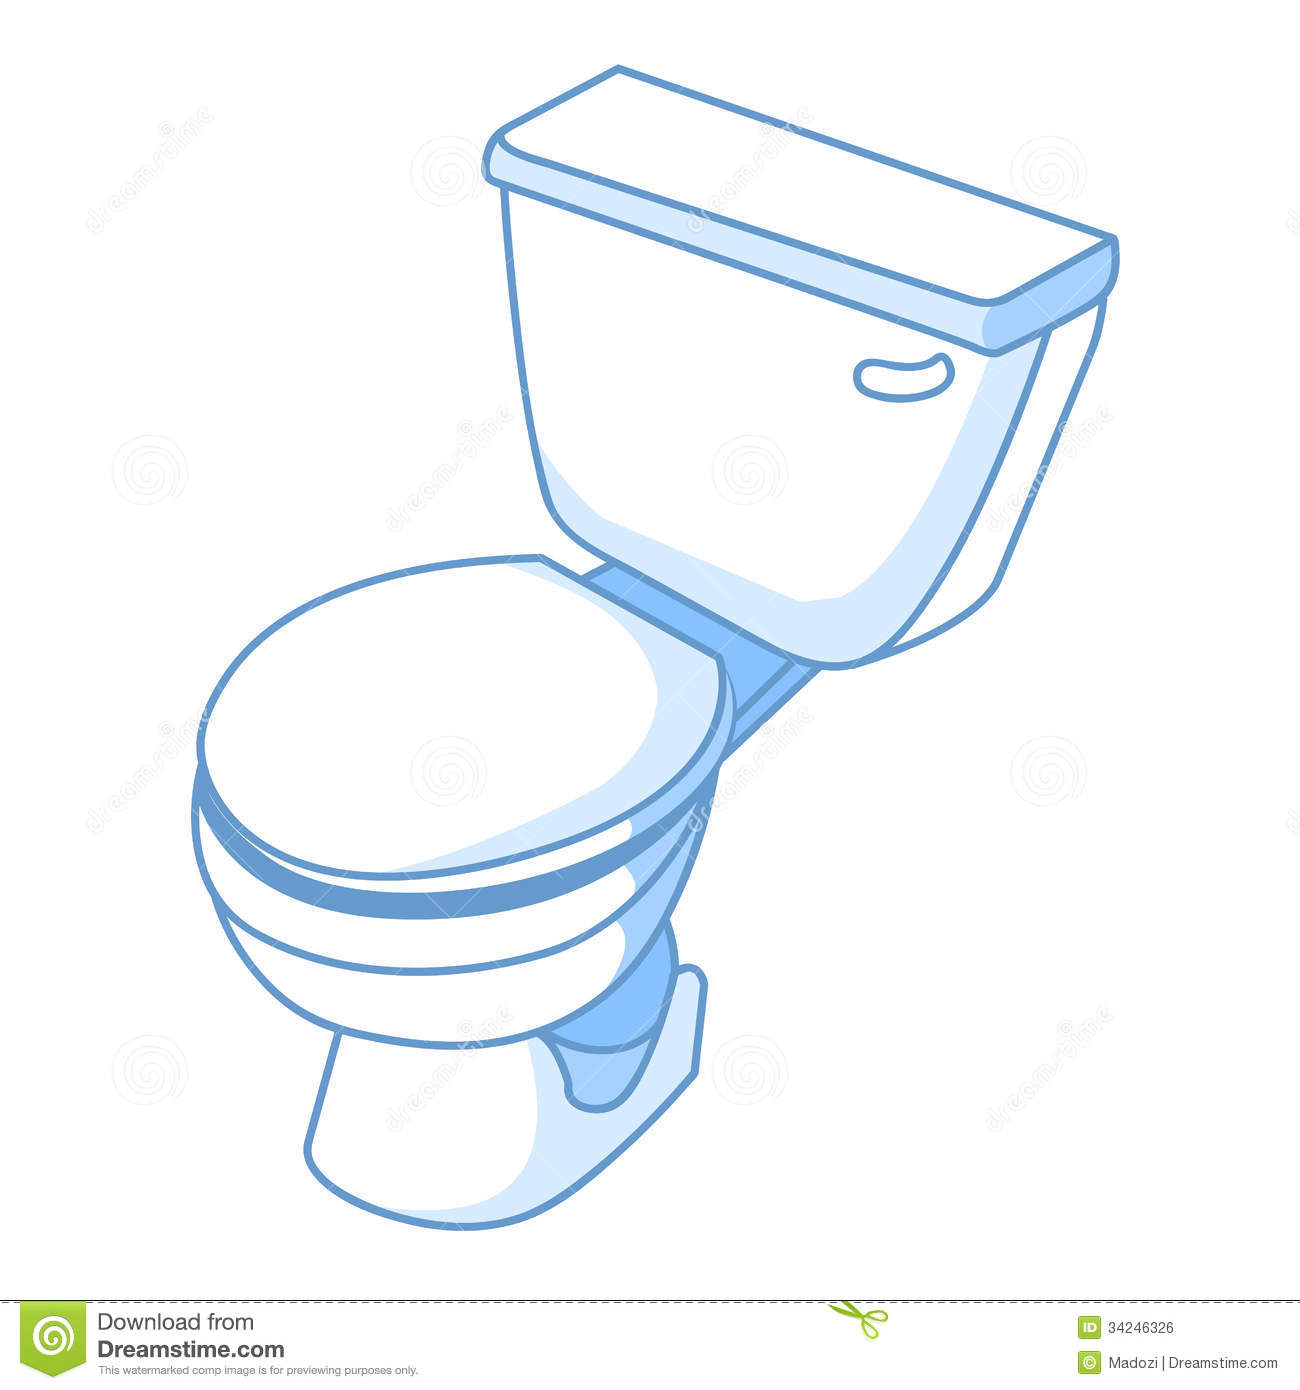 Toilet Isolated Illustration Royalty Free Stock Image   Image